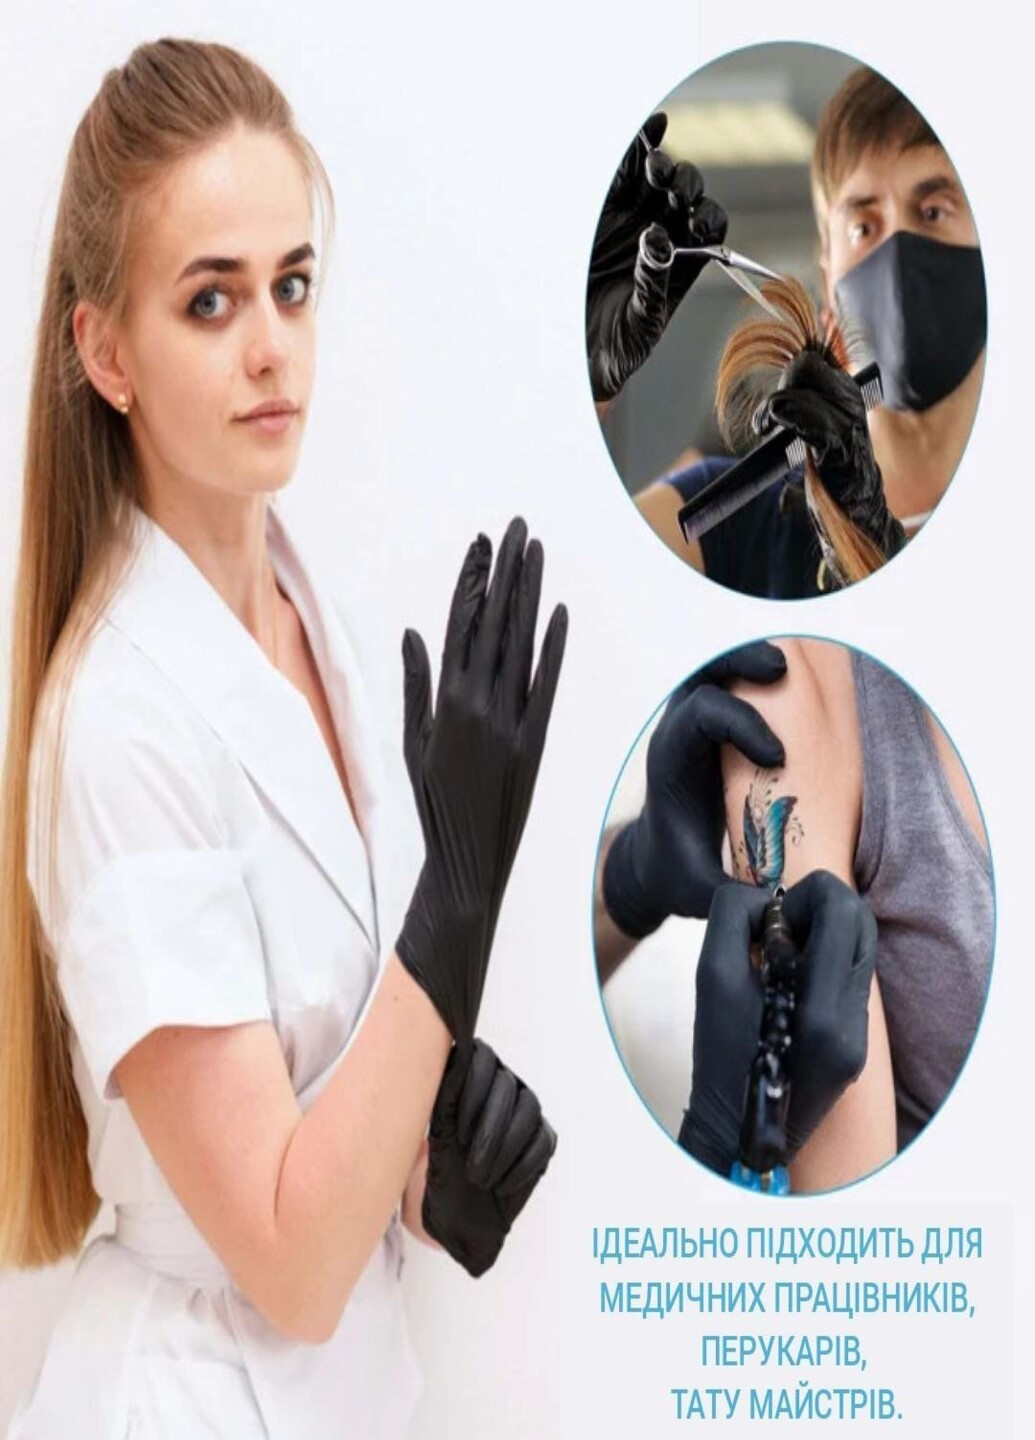 Нитриловые перчатки Advanced Black без пудры текстурированные S 100 шт. Черные (3.3 г) Medicom (254181096)